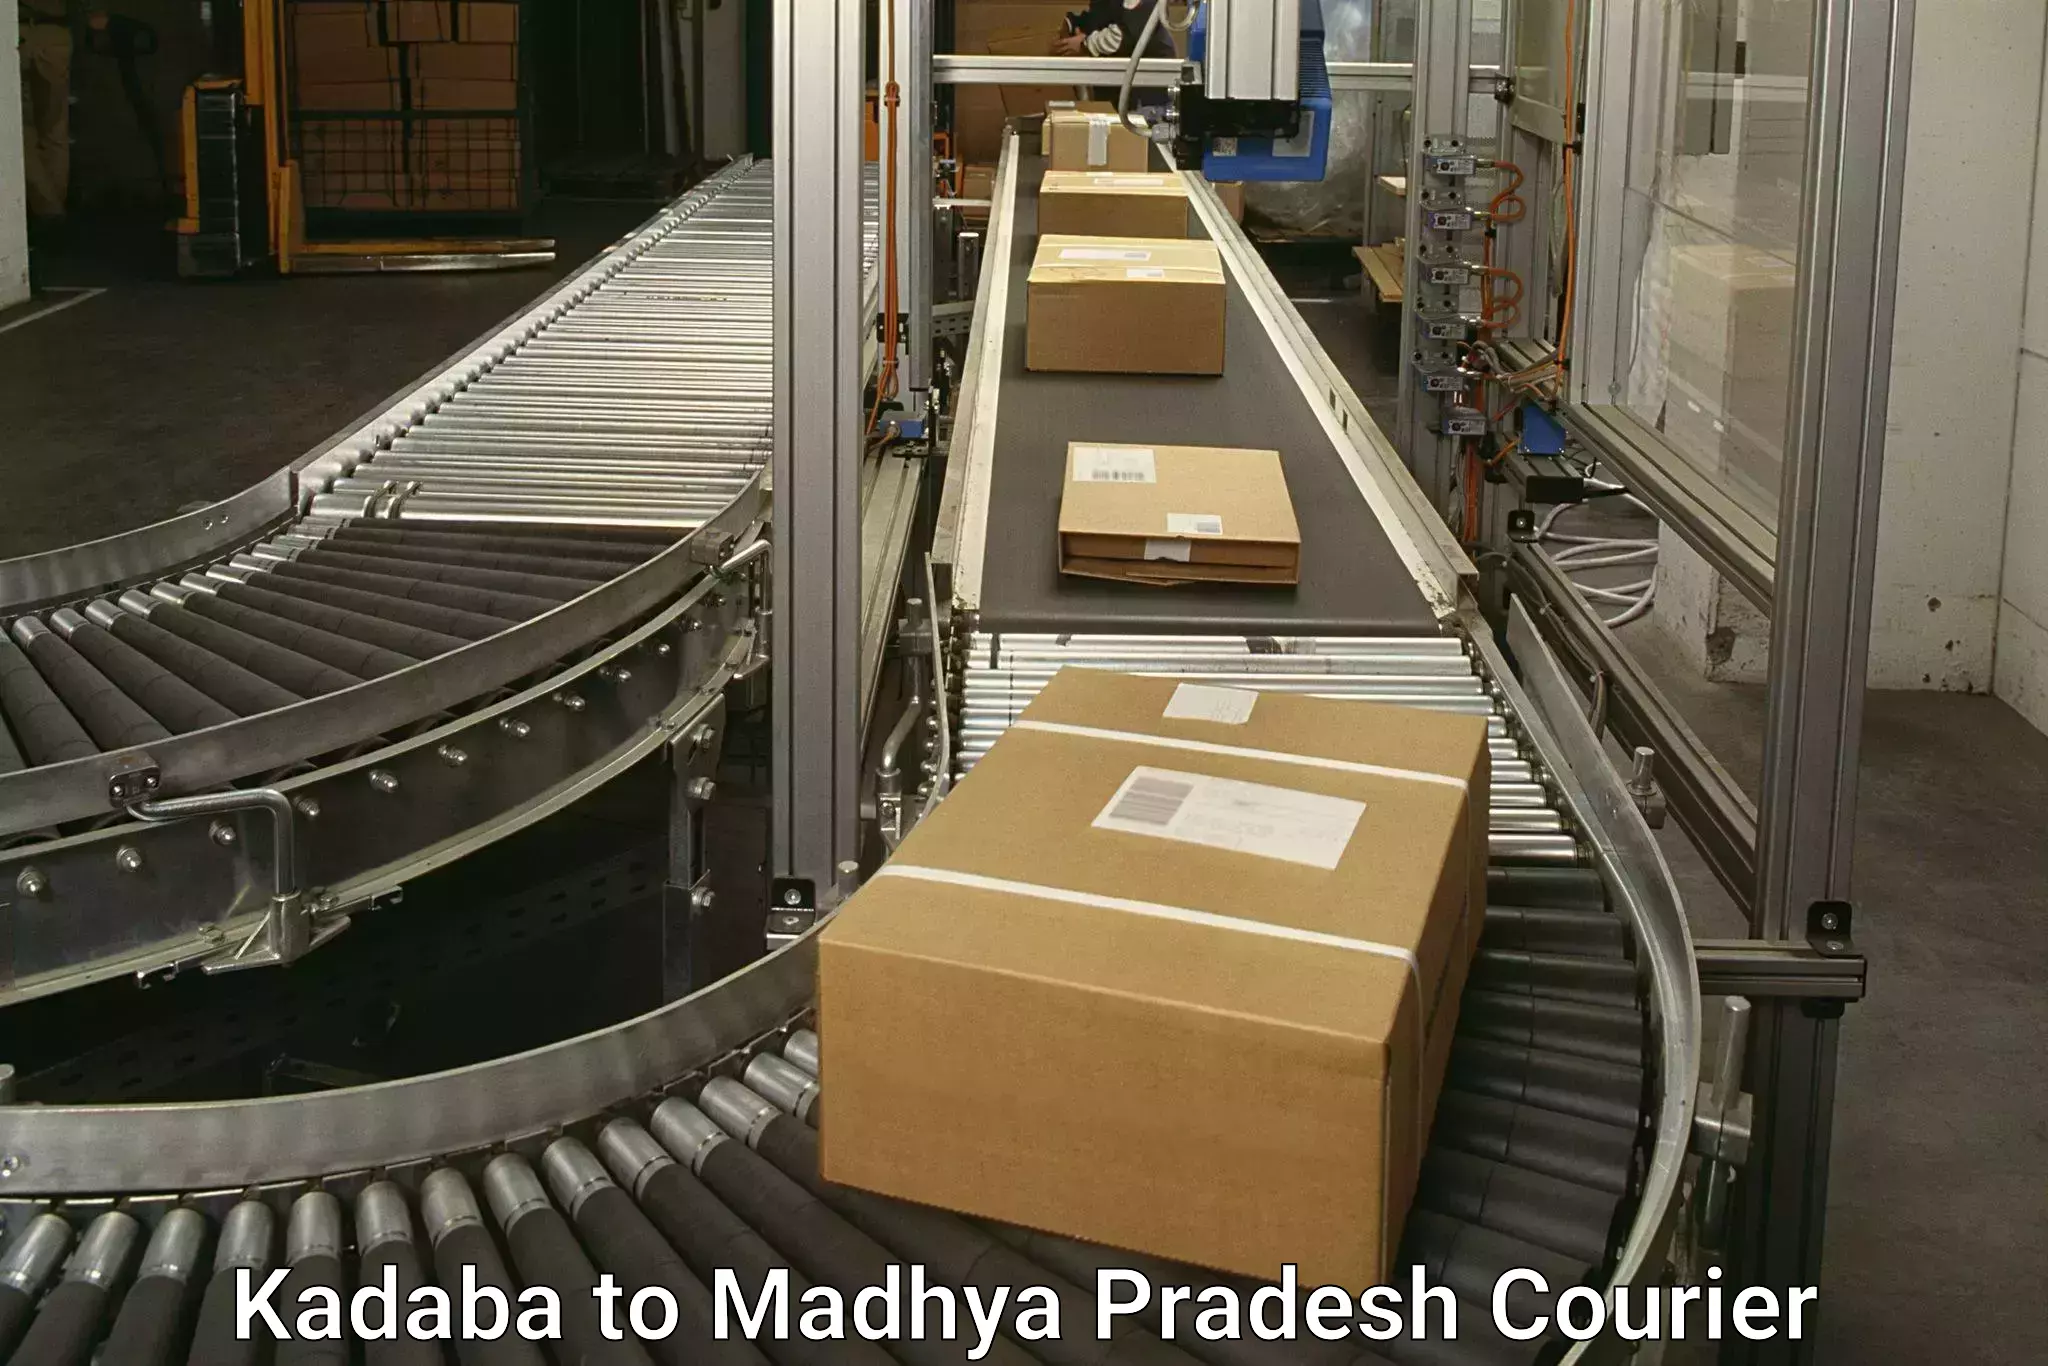 Urgent courier needs in Kadaba to Madhya Pradesh